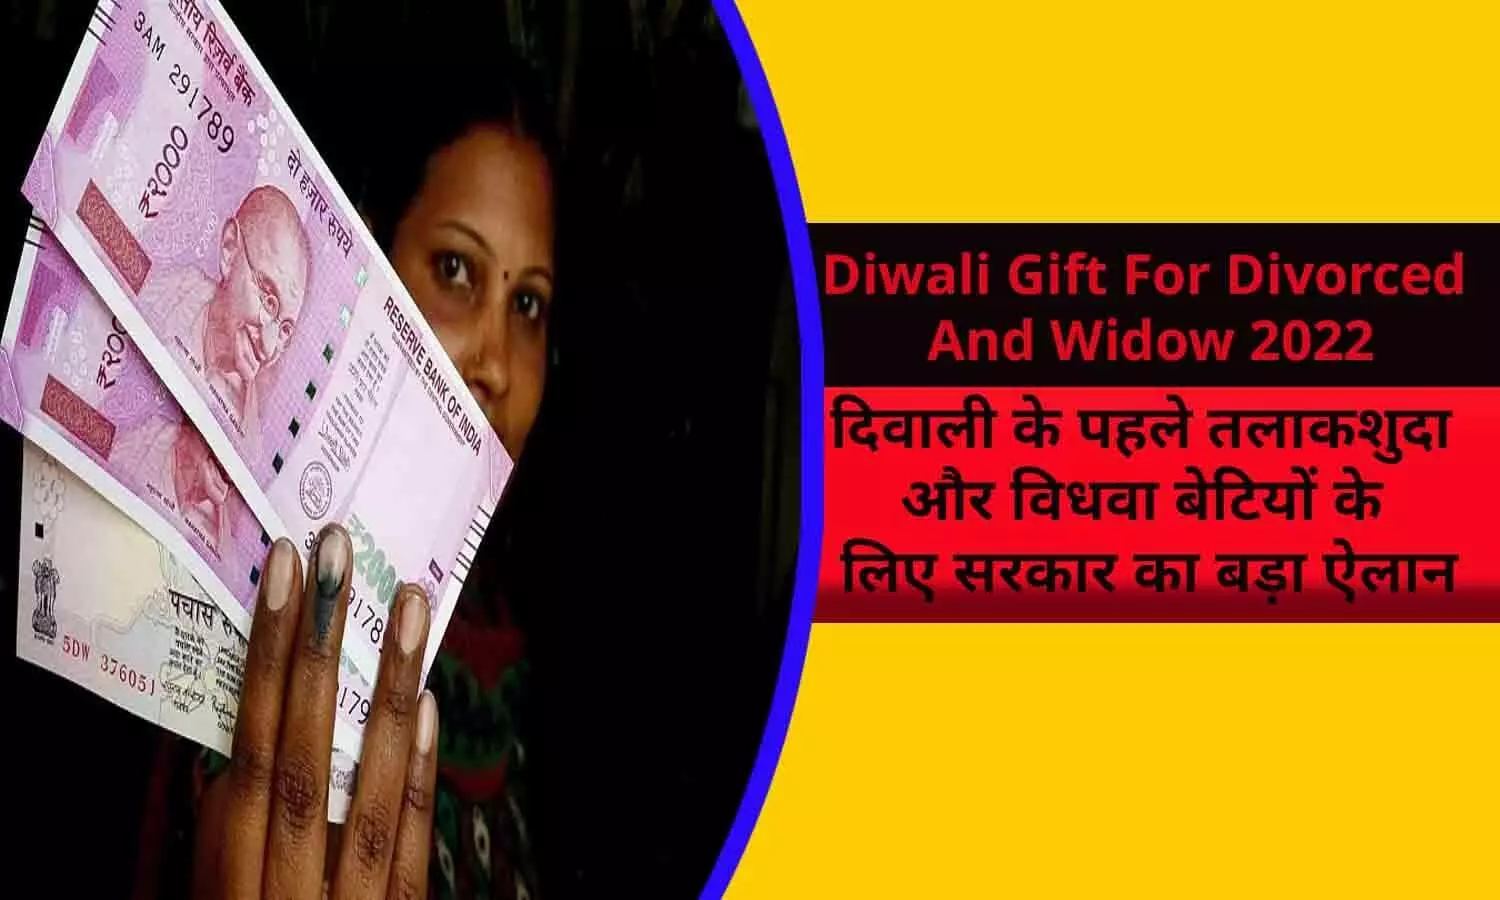 Diwali Gift For Divorced And Widow 2022: दिवाली के पहले तलाकशुदा और विधवा बेटियों के लिए सरकार का बड़ा ऐलान, अब मिलेगी बढ़कर पेंशन, आदेश जारी